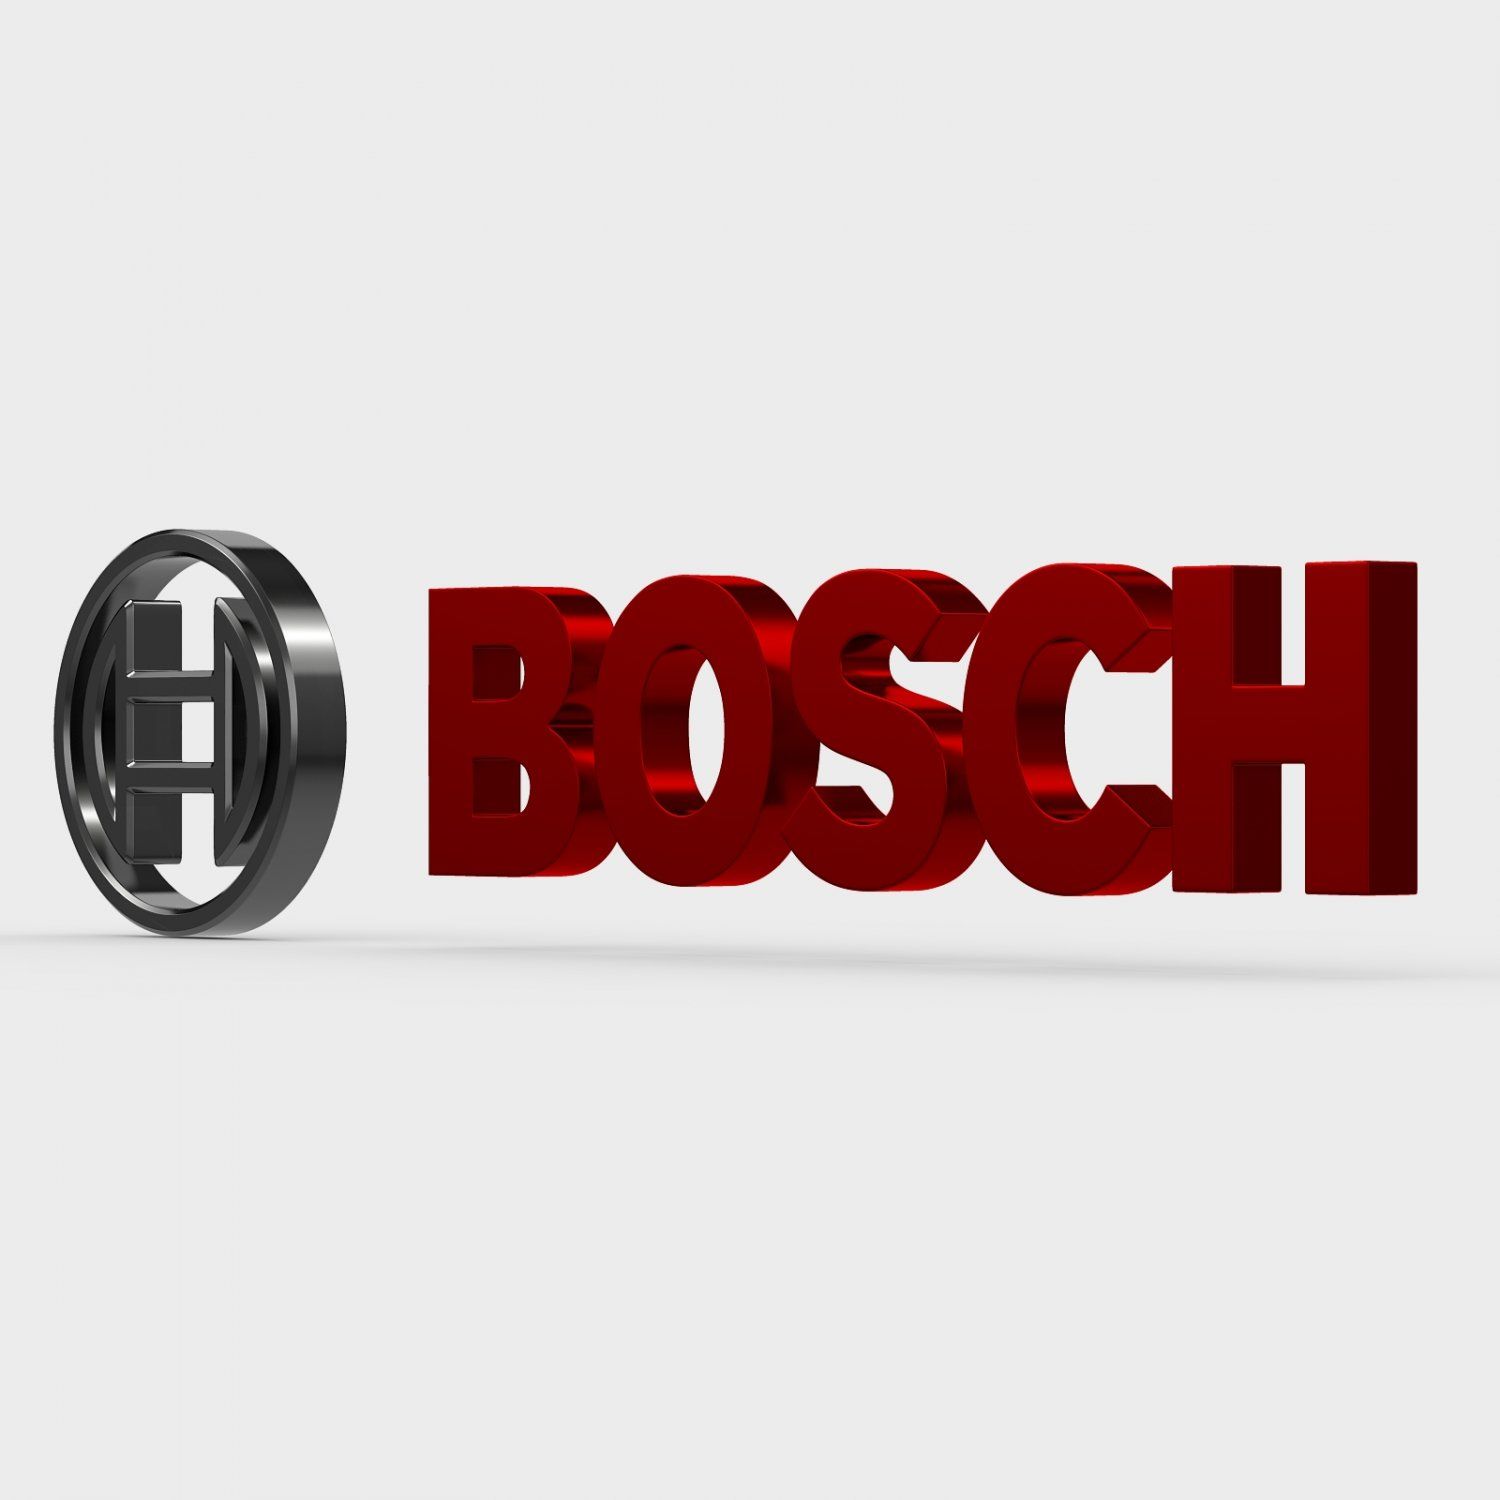 Propouštění v automobilce není vinou odborů, ale trendem Průmyslu 4.0. Co s tím můžeme dělat v Bosch Powertrain?